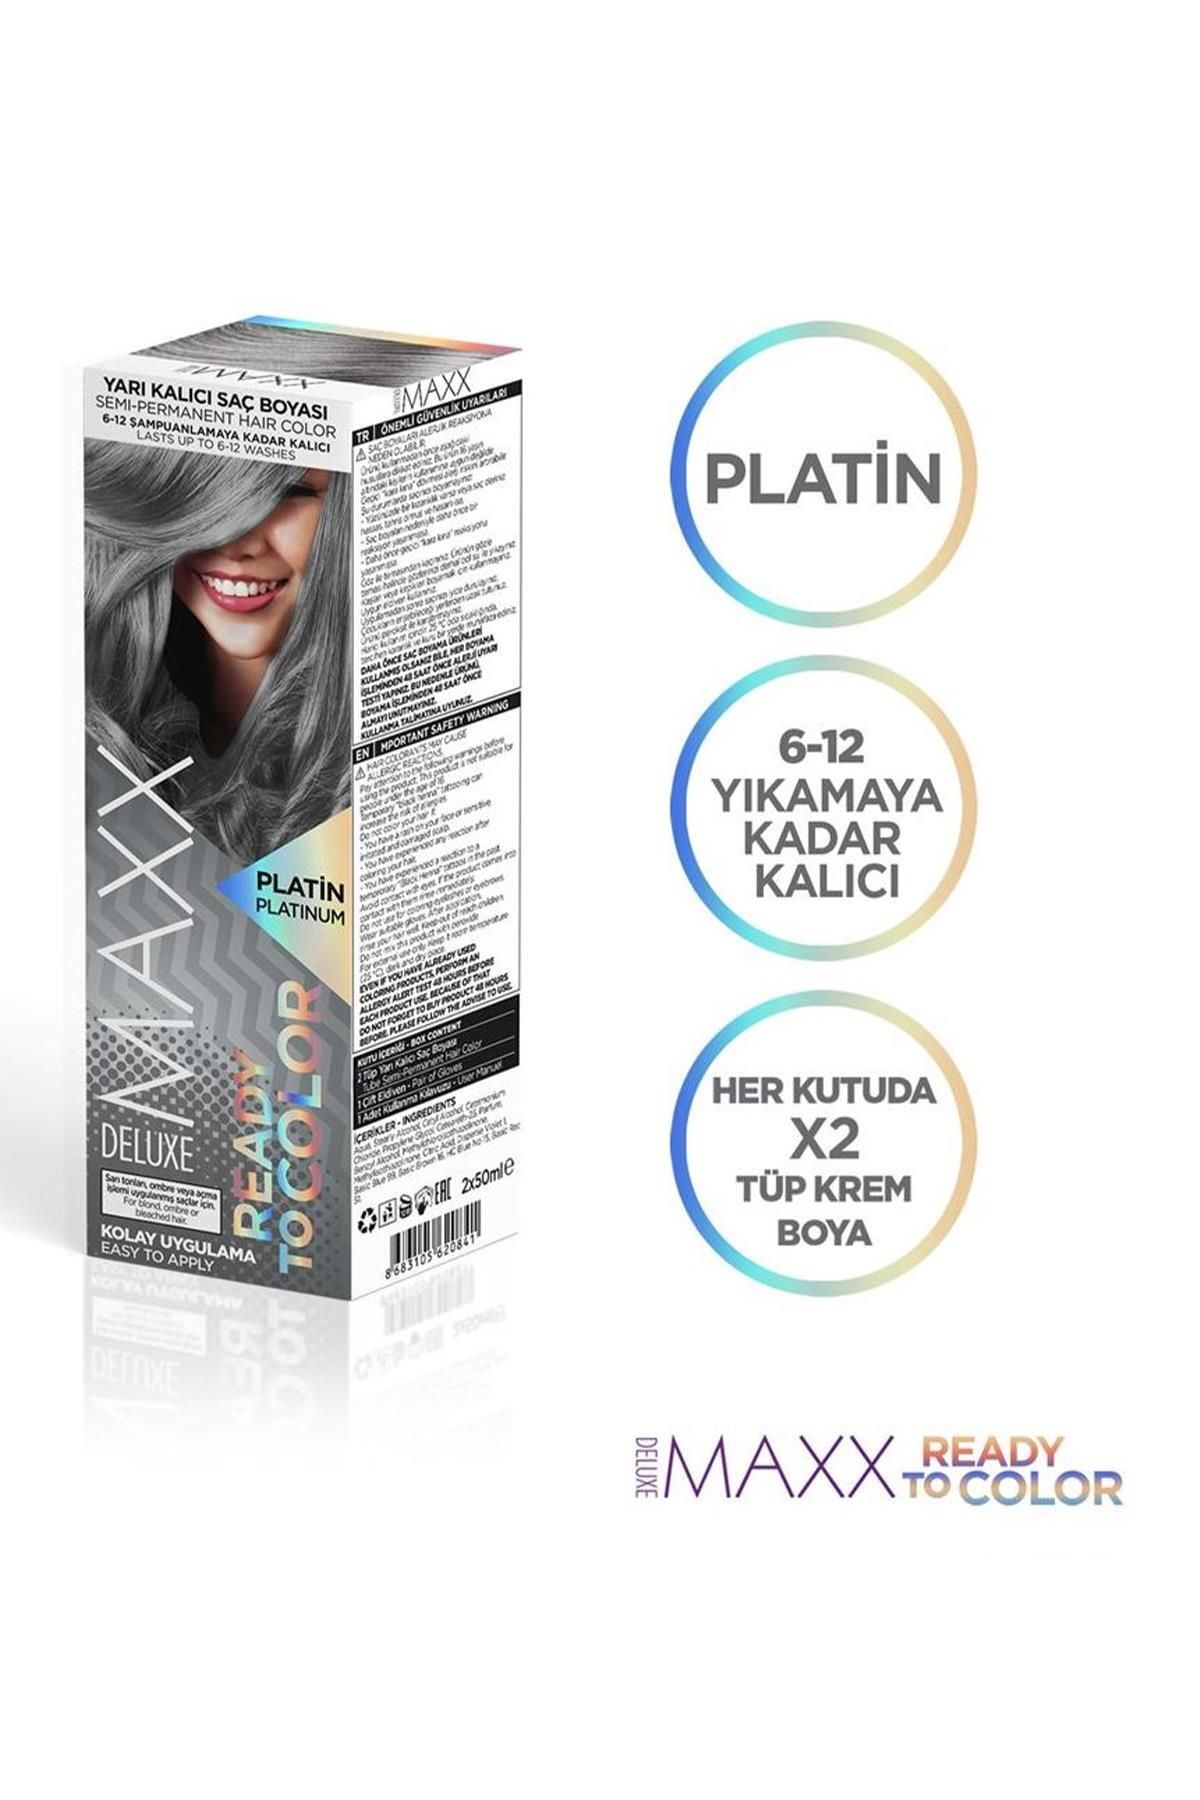 MAXX DELUXE Yarı Kalıcı Tüp Saç Boyası Platin 100 ml